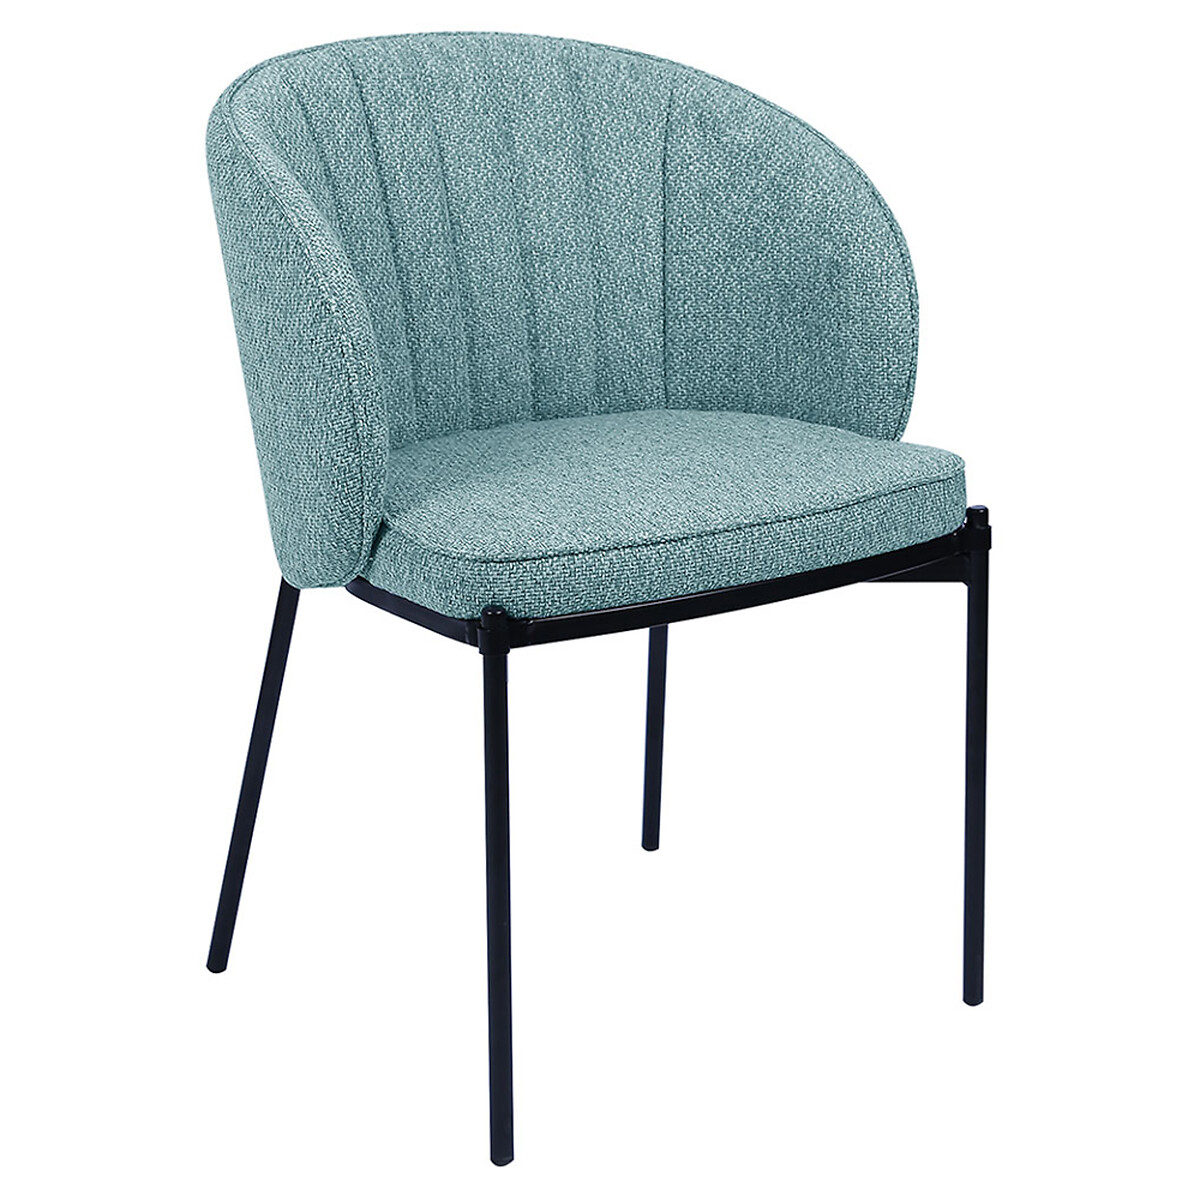 Стул Milan единый размер синий стул с фланелевым покрытием tibby единый размер синий